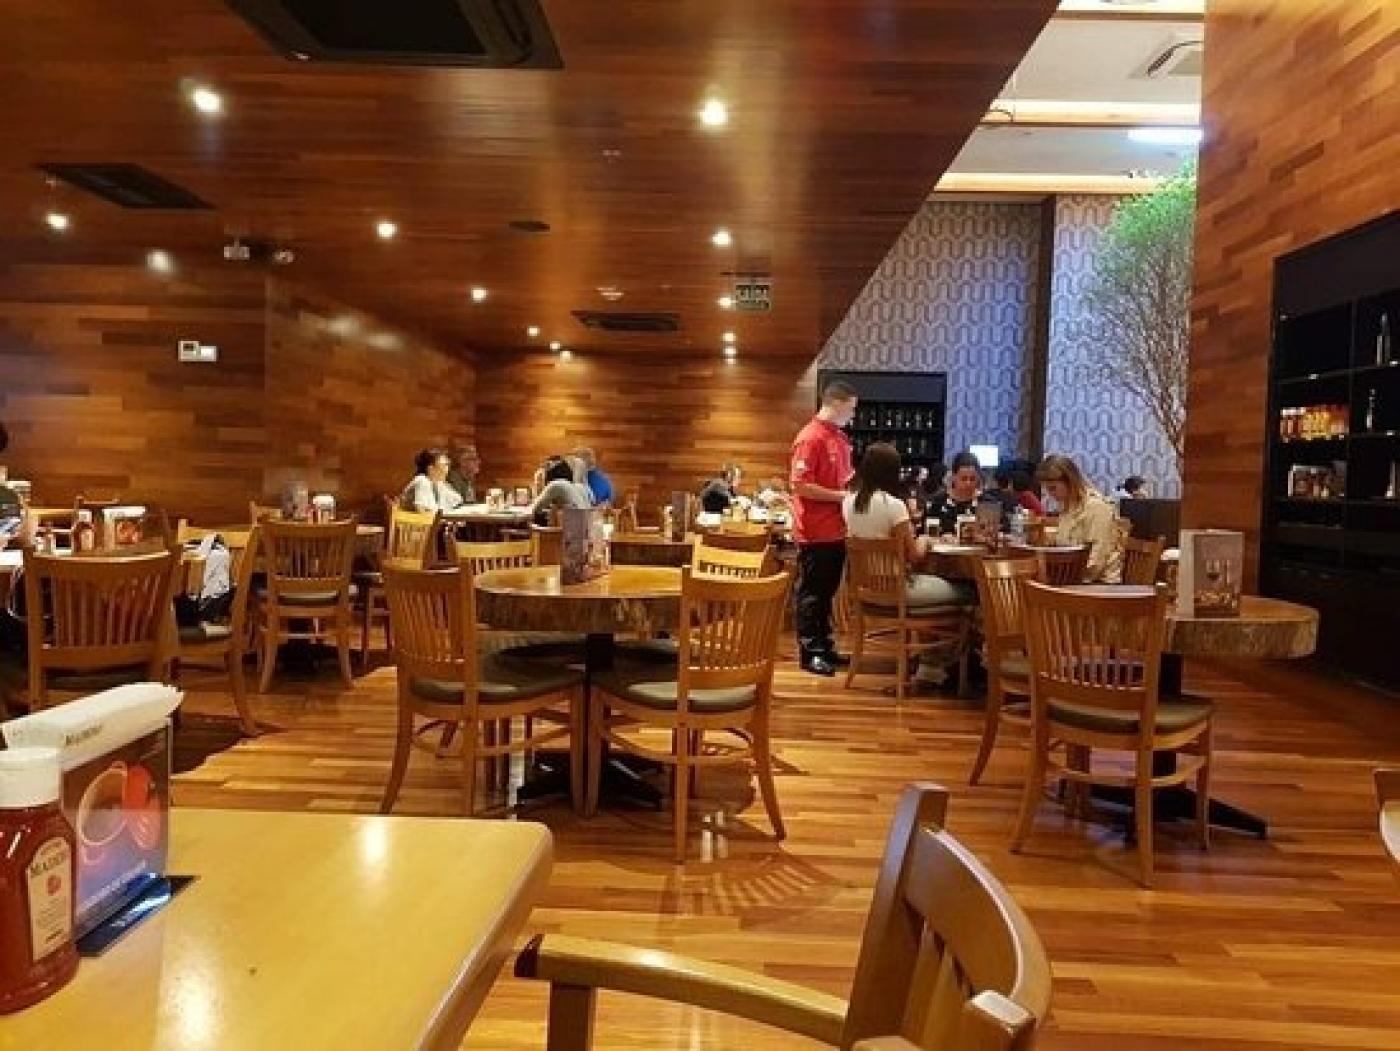 salão de restaurante com mesas e algumas pessoas sentadas. #paratodosverem